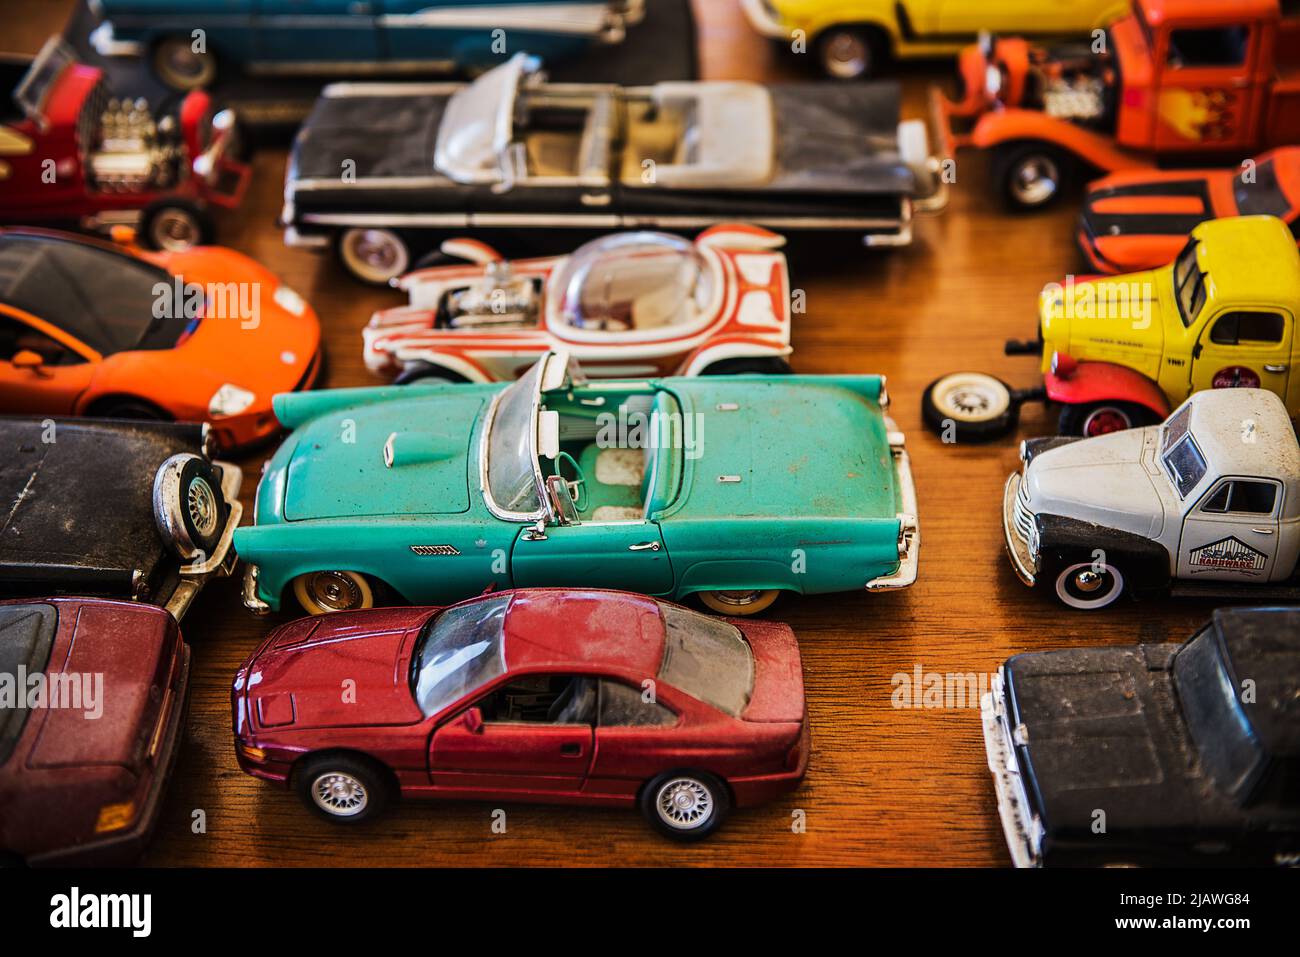 Vintage toy cars at Brimfield flea market, Massachusetts Stock Photo